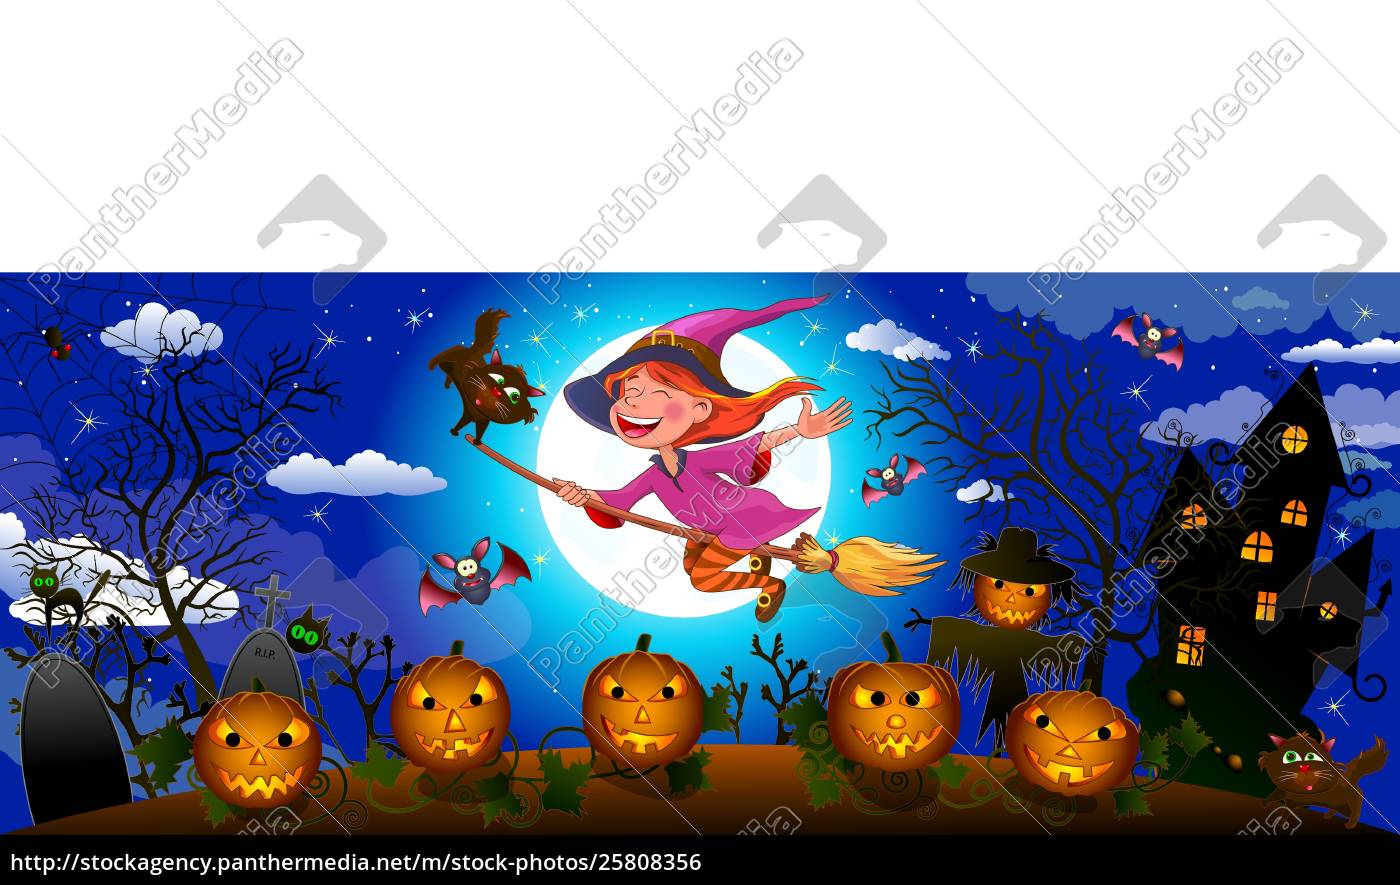 bruxa bonito de halloween em uma vassoura - Stockphoto #25808356